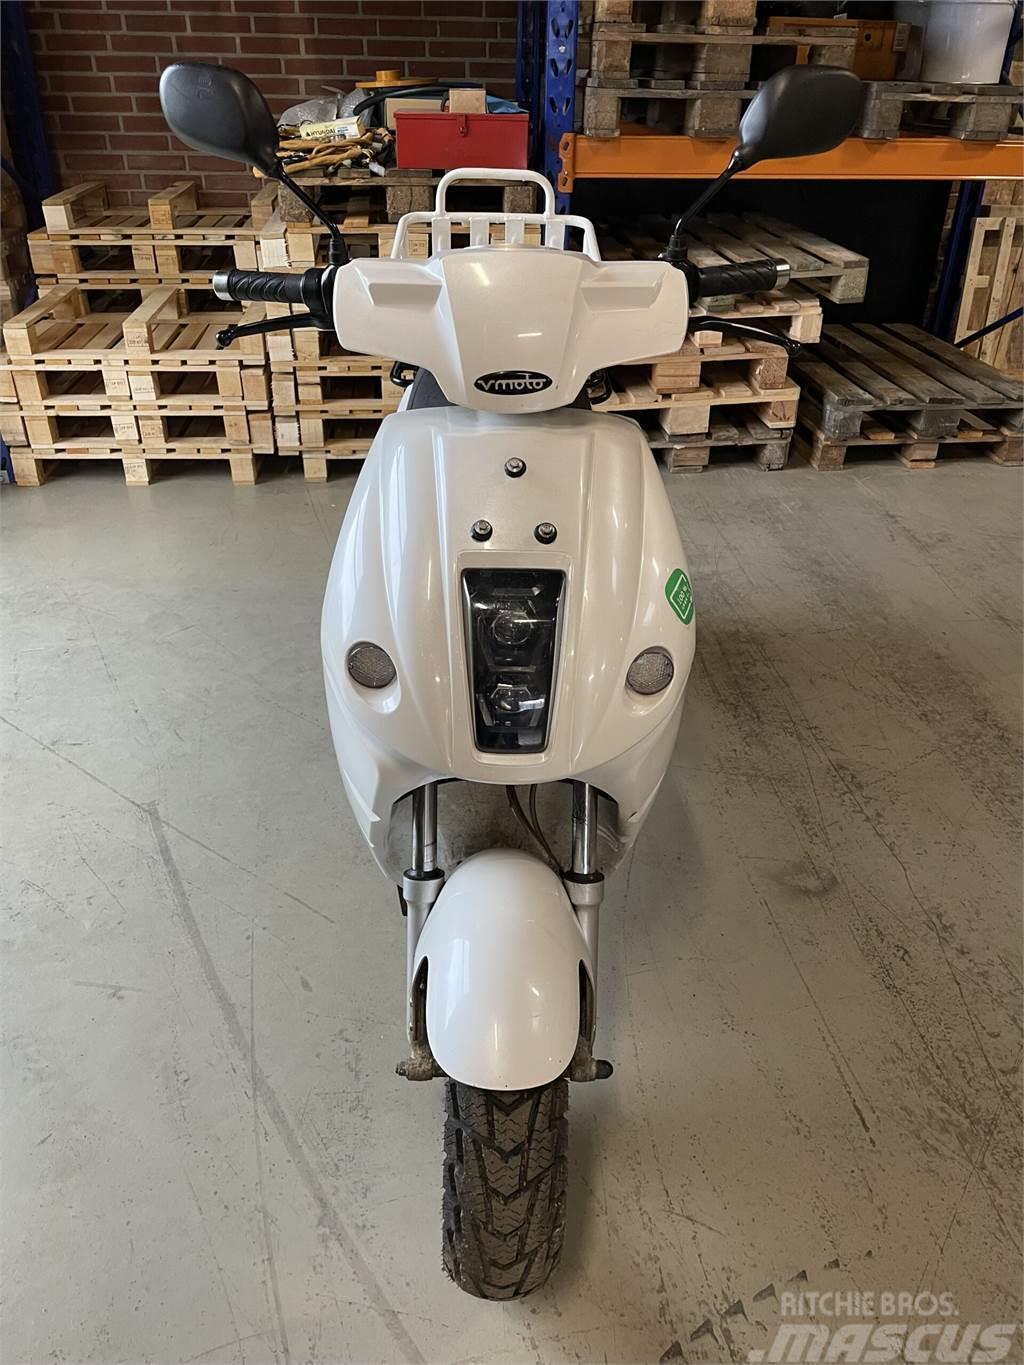  El-scooter V-Moto E-max, German Engineering, Itali Andre komponenter